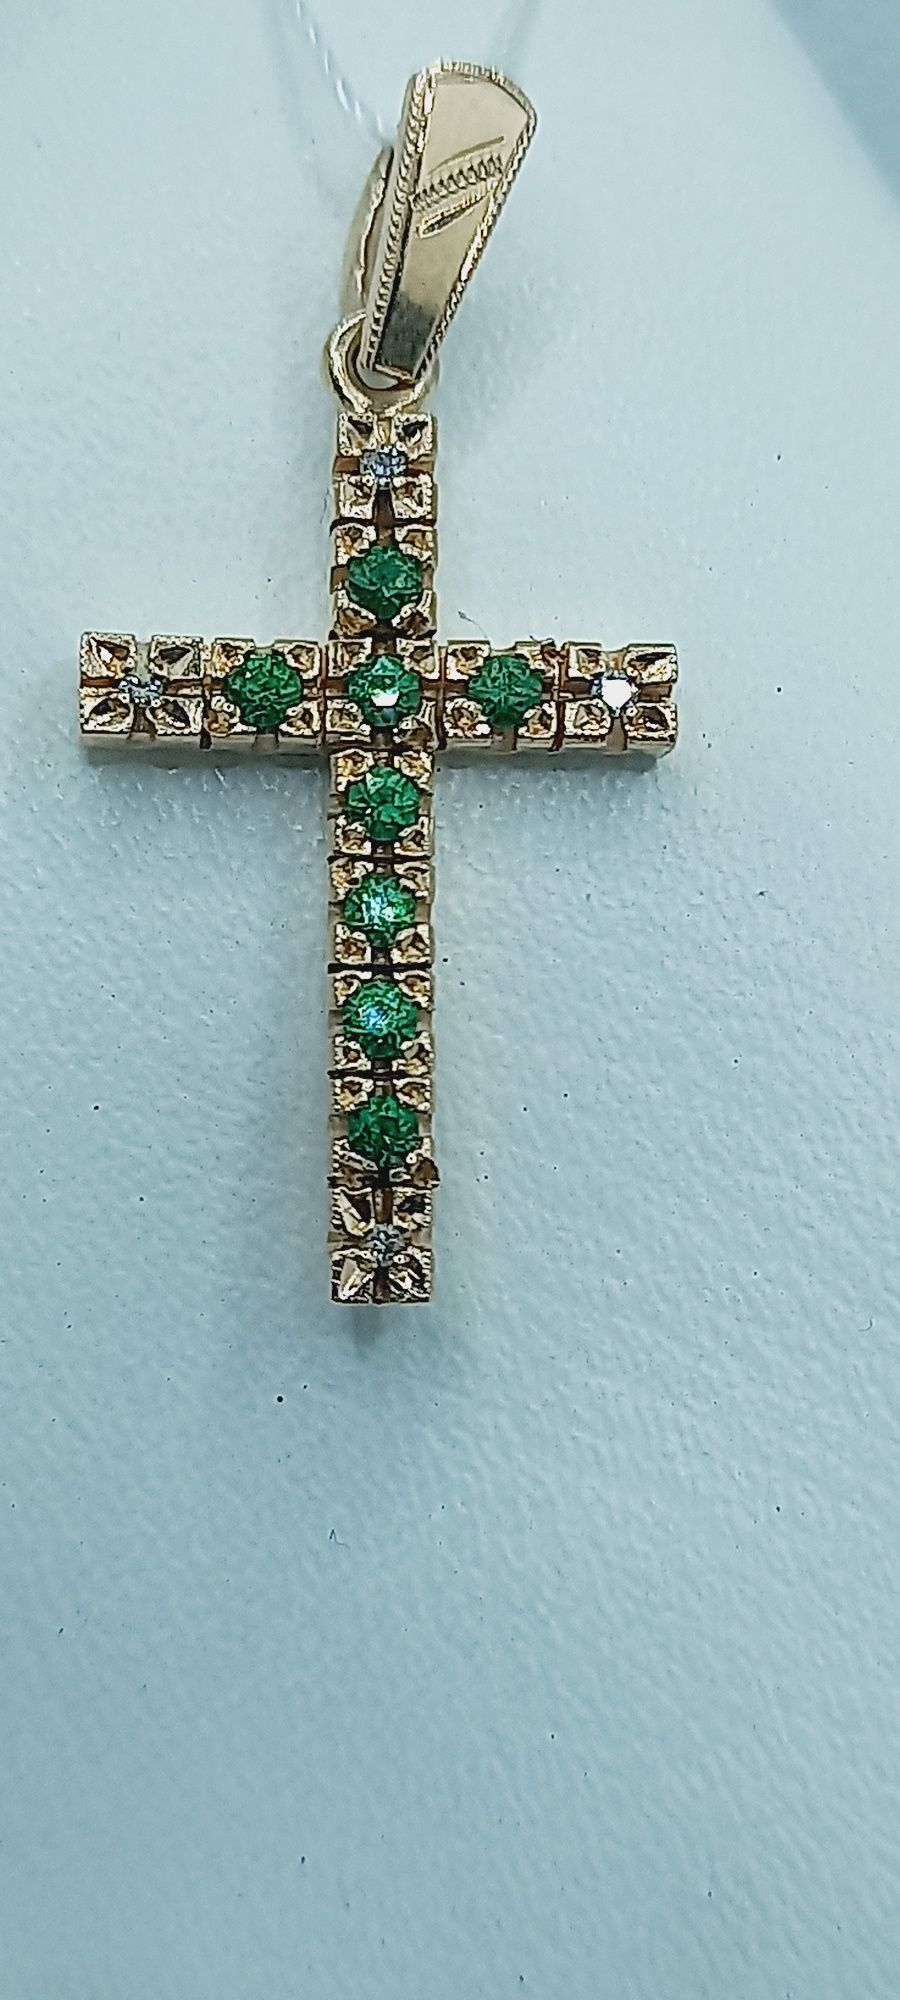 Підвіс хрест з демантоідом(рідкісний зелёный гранат)та діамантами